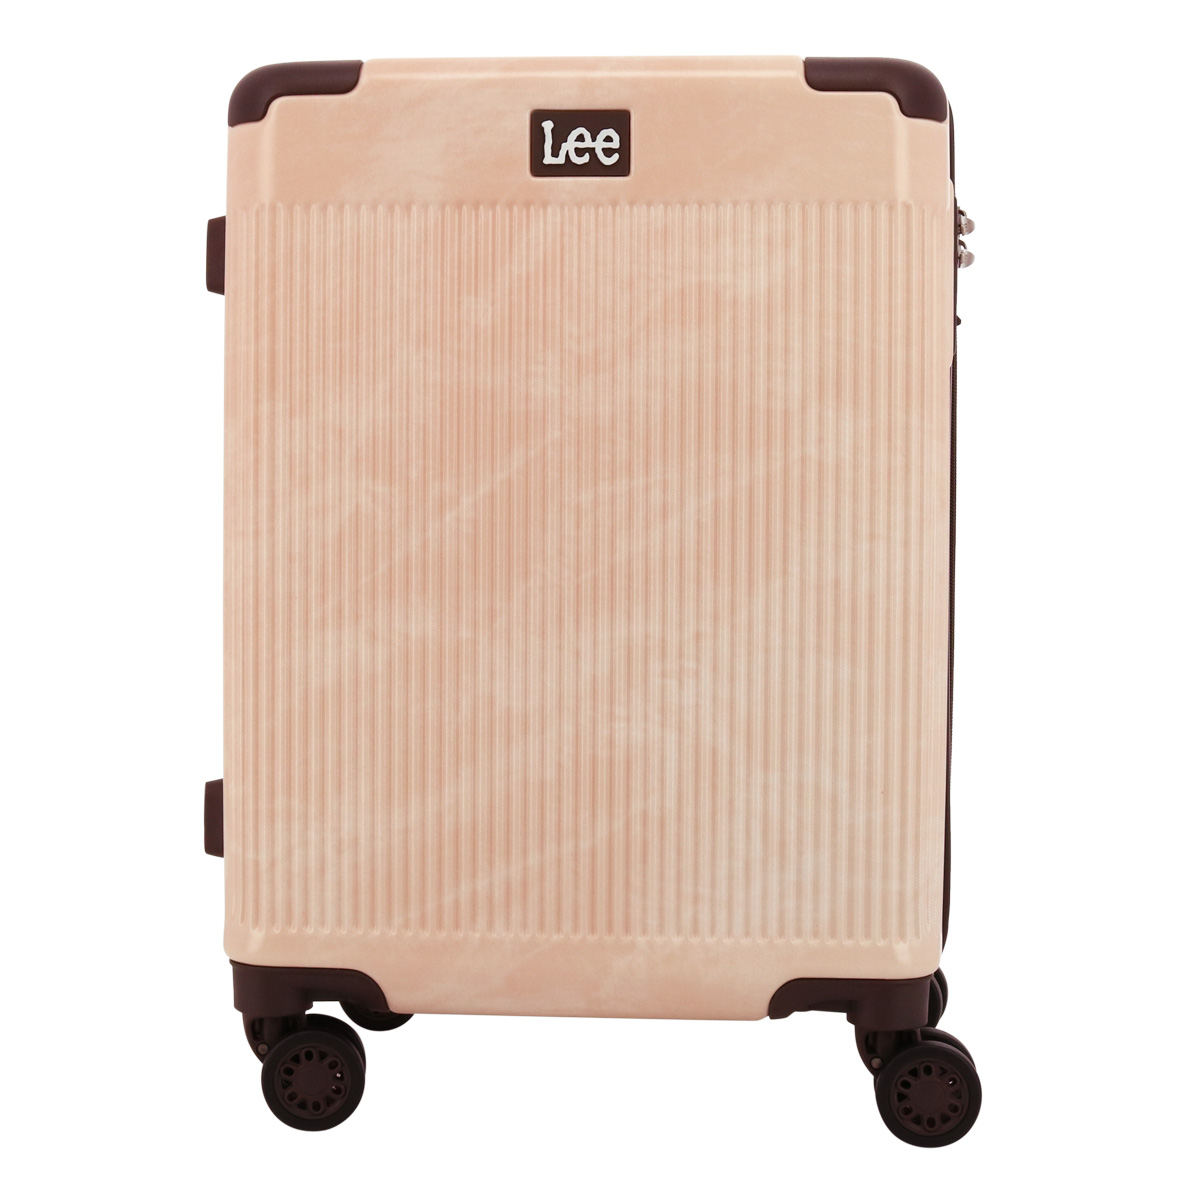 Lee スーツケース 38L 47L 47cm 3.3kg 機内持ち込み 4輪 320-9010 ギ...